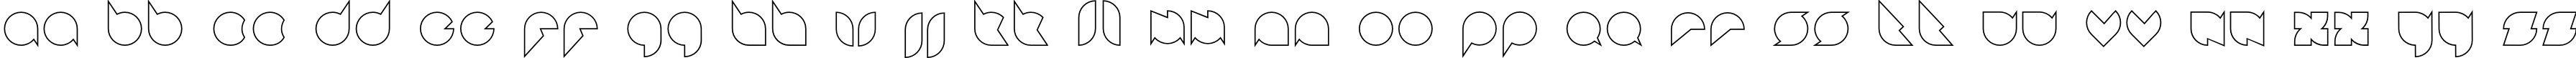 Пример написания английского алфавита шрифтом Badabing Regular